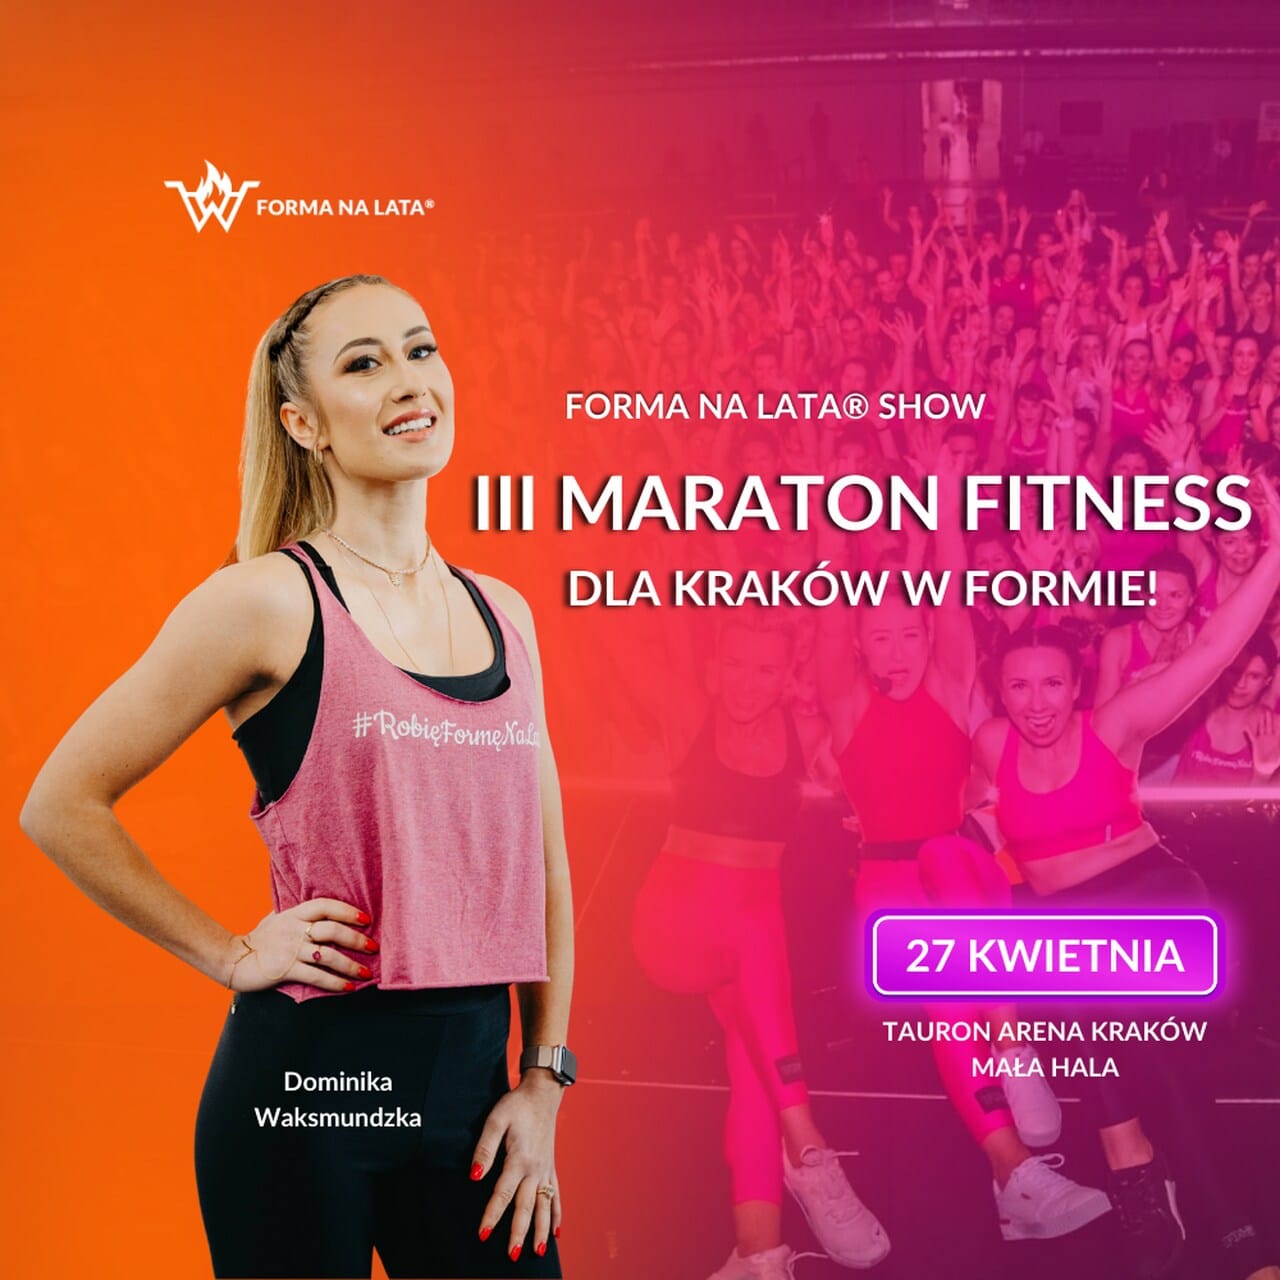 3maraton fitness forma na lata - III Maratonu Fitness Forma na lata® SHOW dla Kraków w Formie